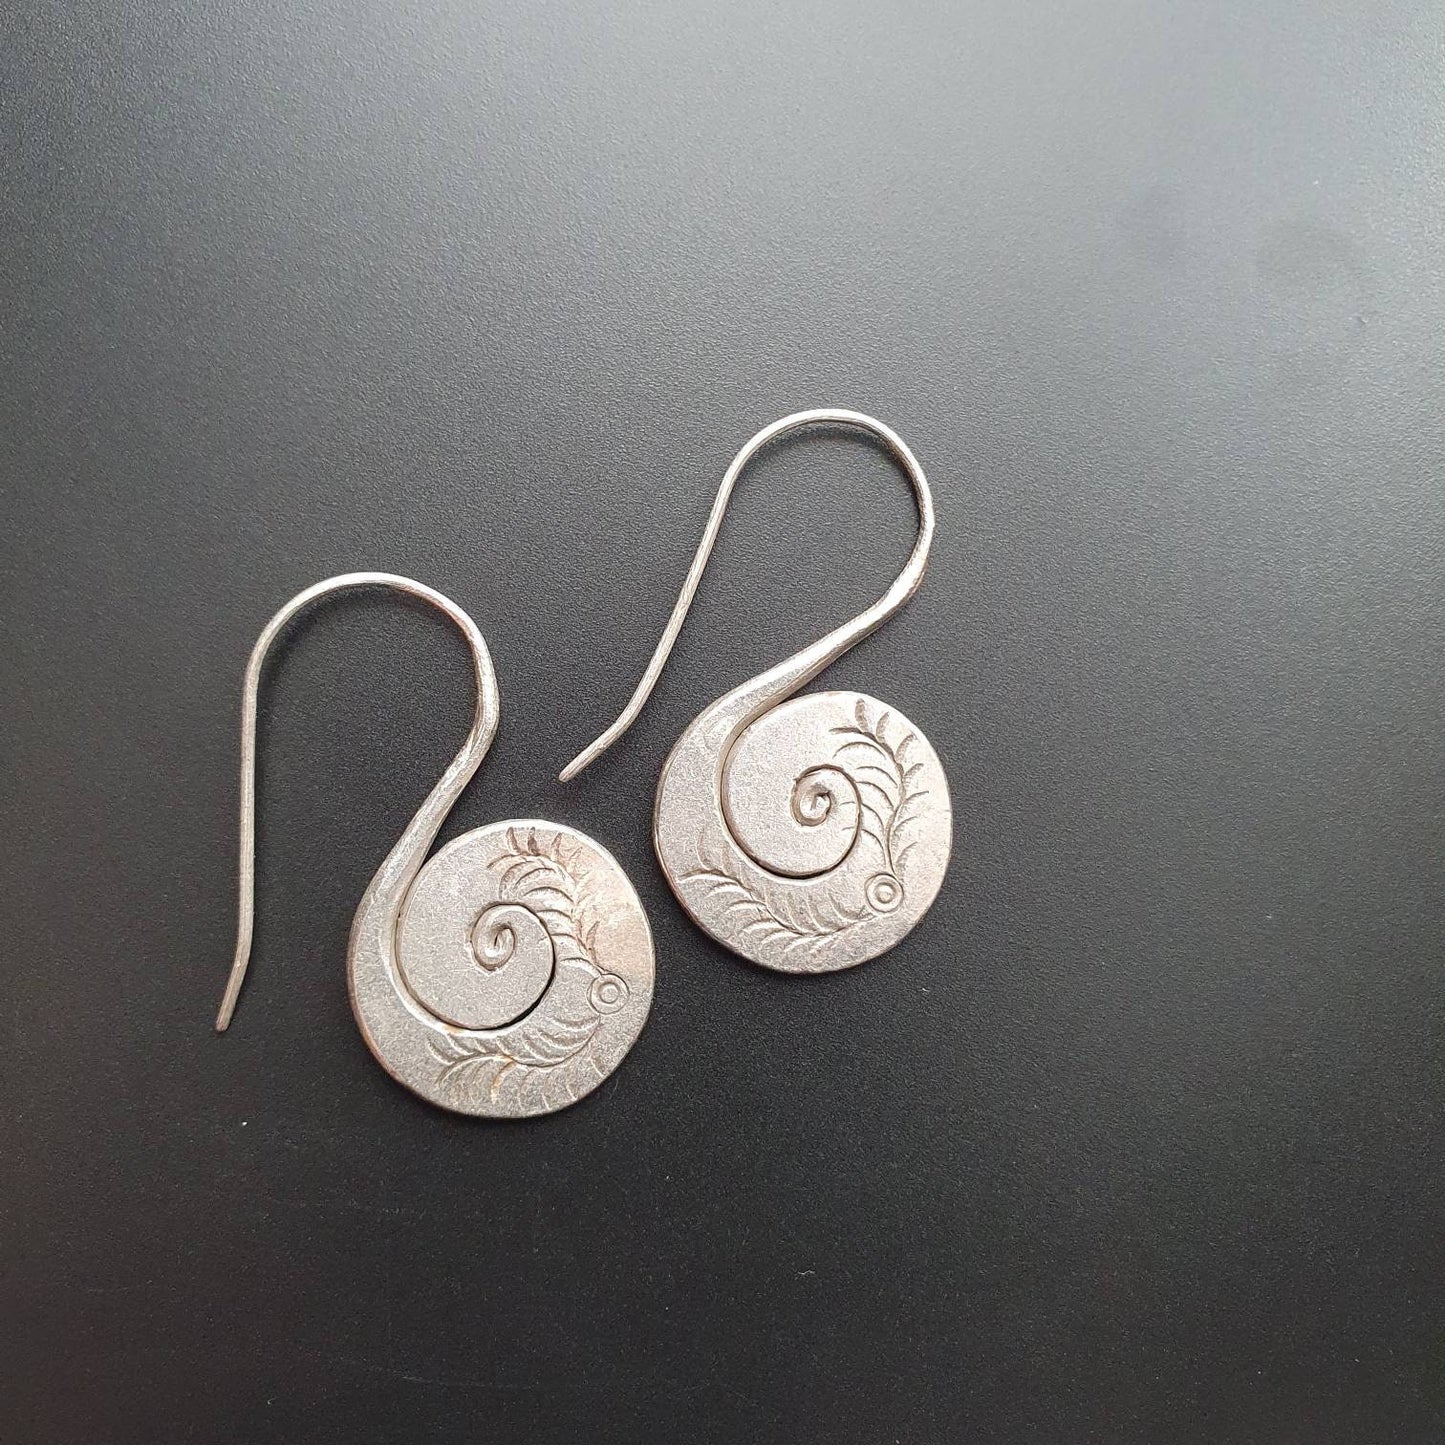 Silver earrings, swirl one piece earrings, solid silver earrings, Boho jewellery, tribal earrings, sirius, bali earrings,